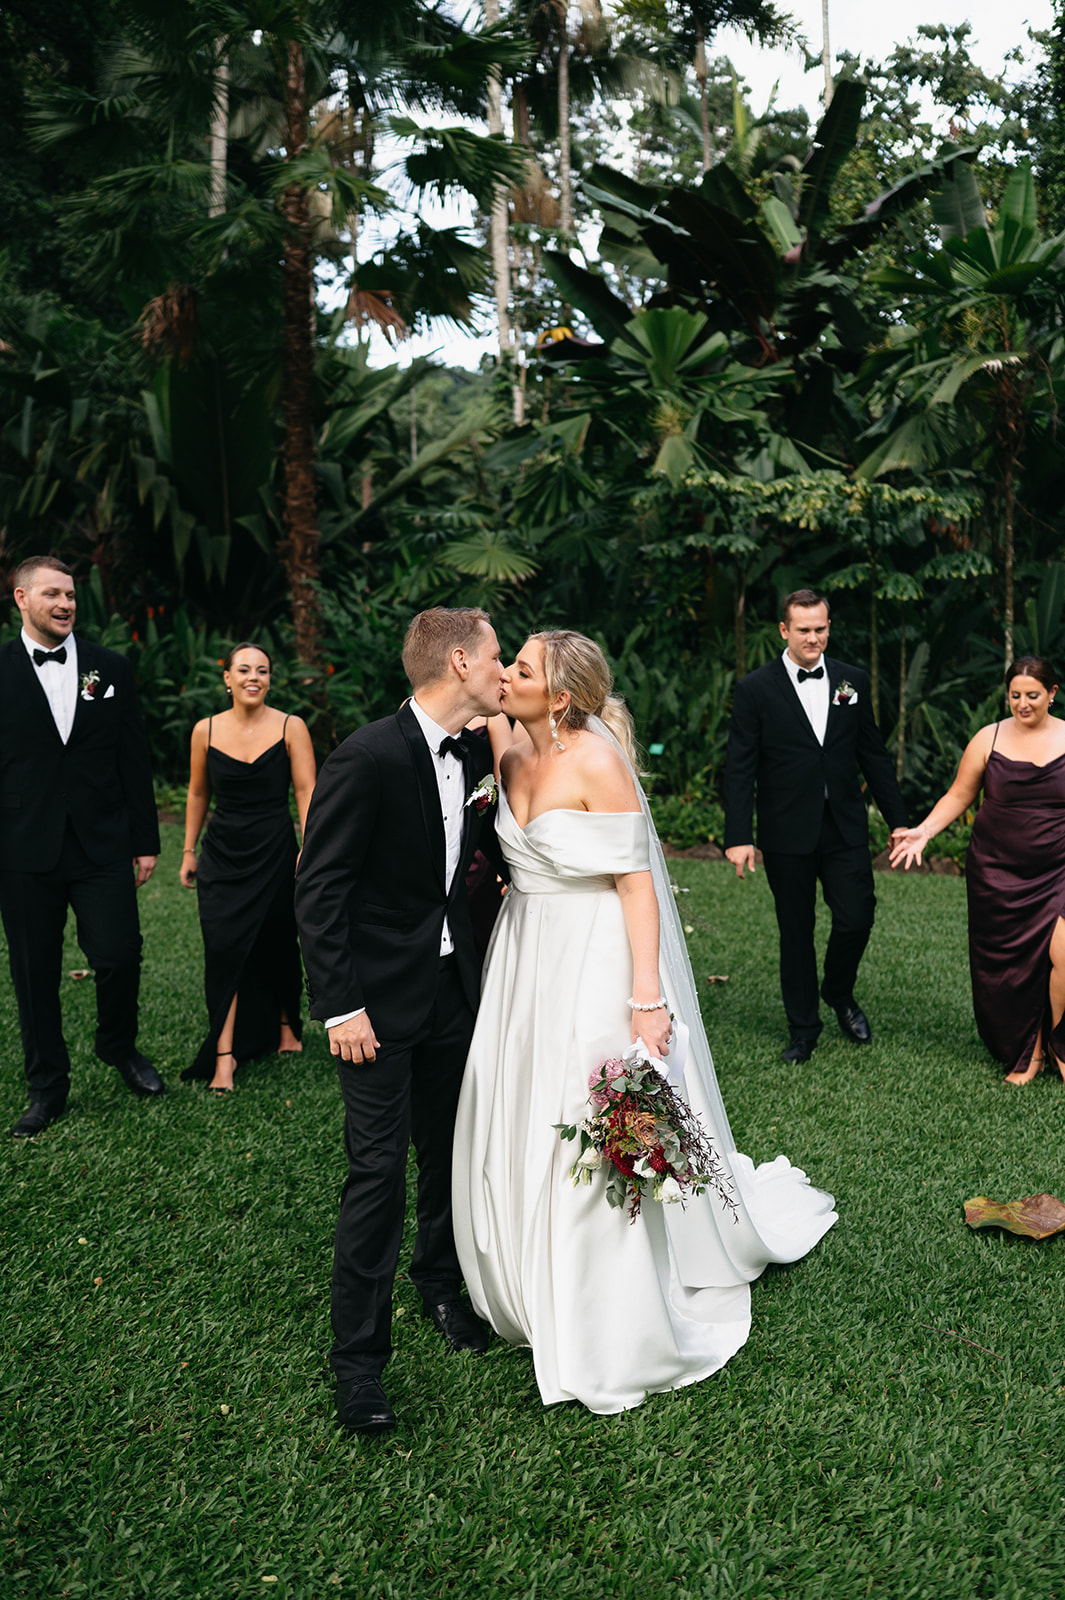 Bridal party photos in the Cairns Botanical Garden